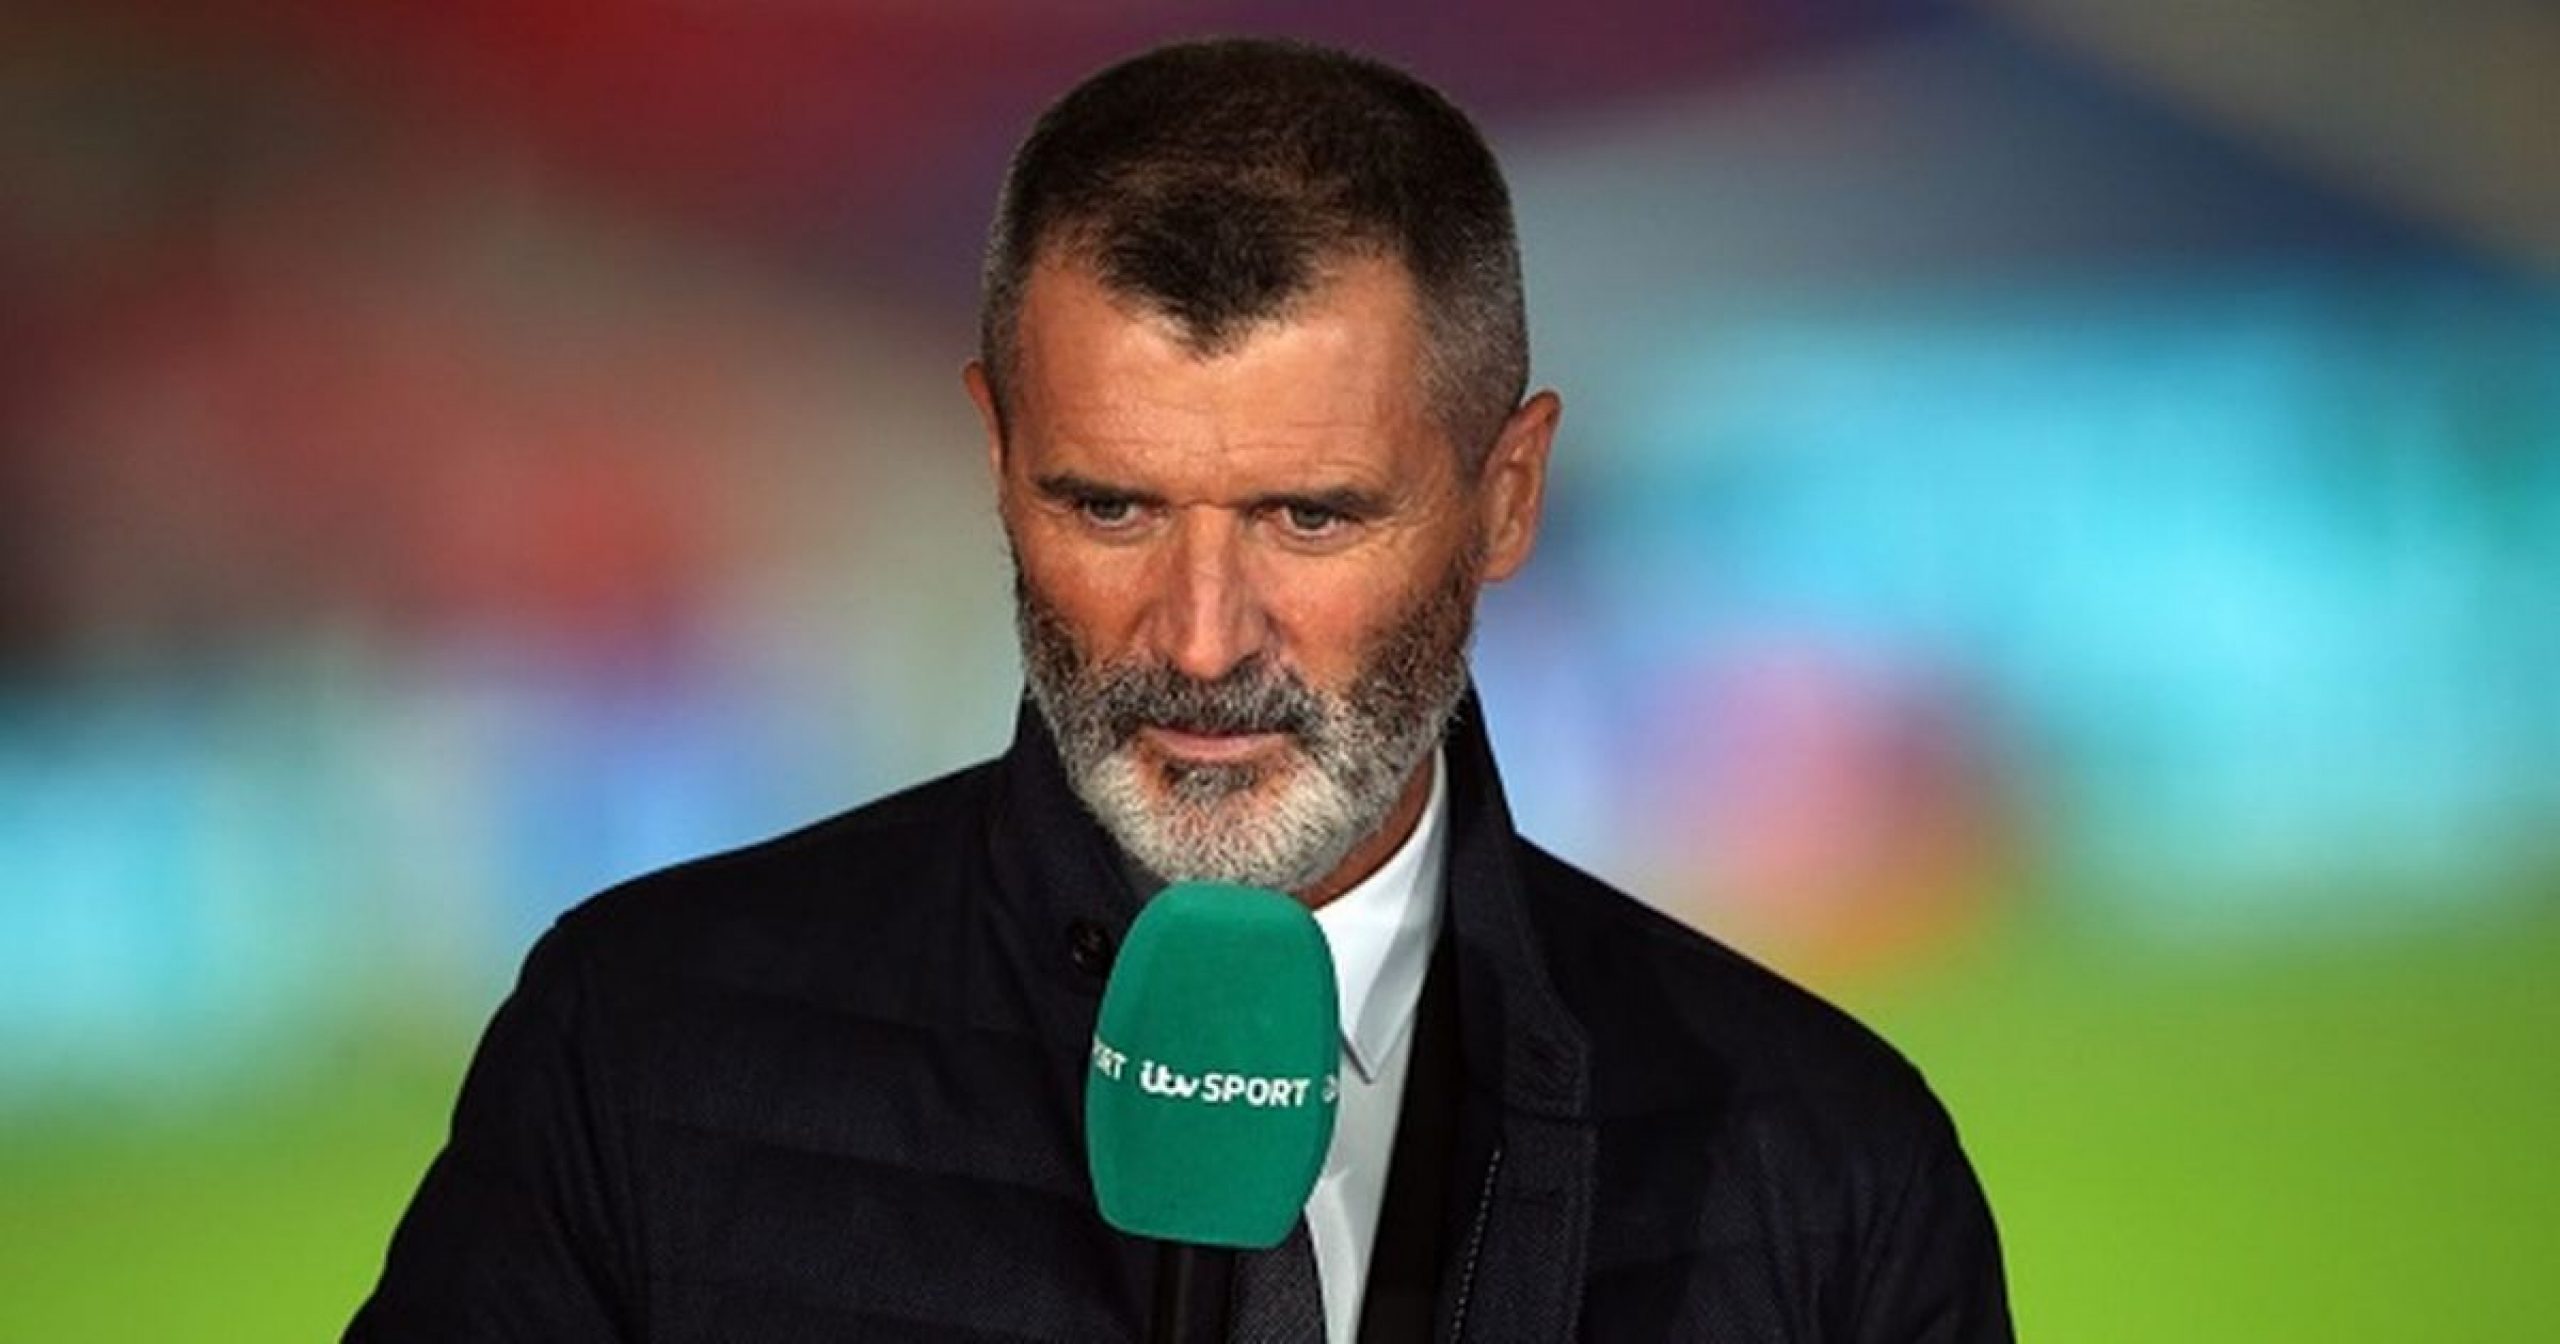 Roy Keane’s Euro 2020 punditry highlights released by ITV